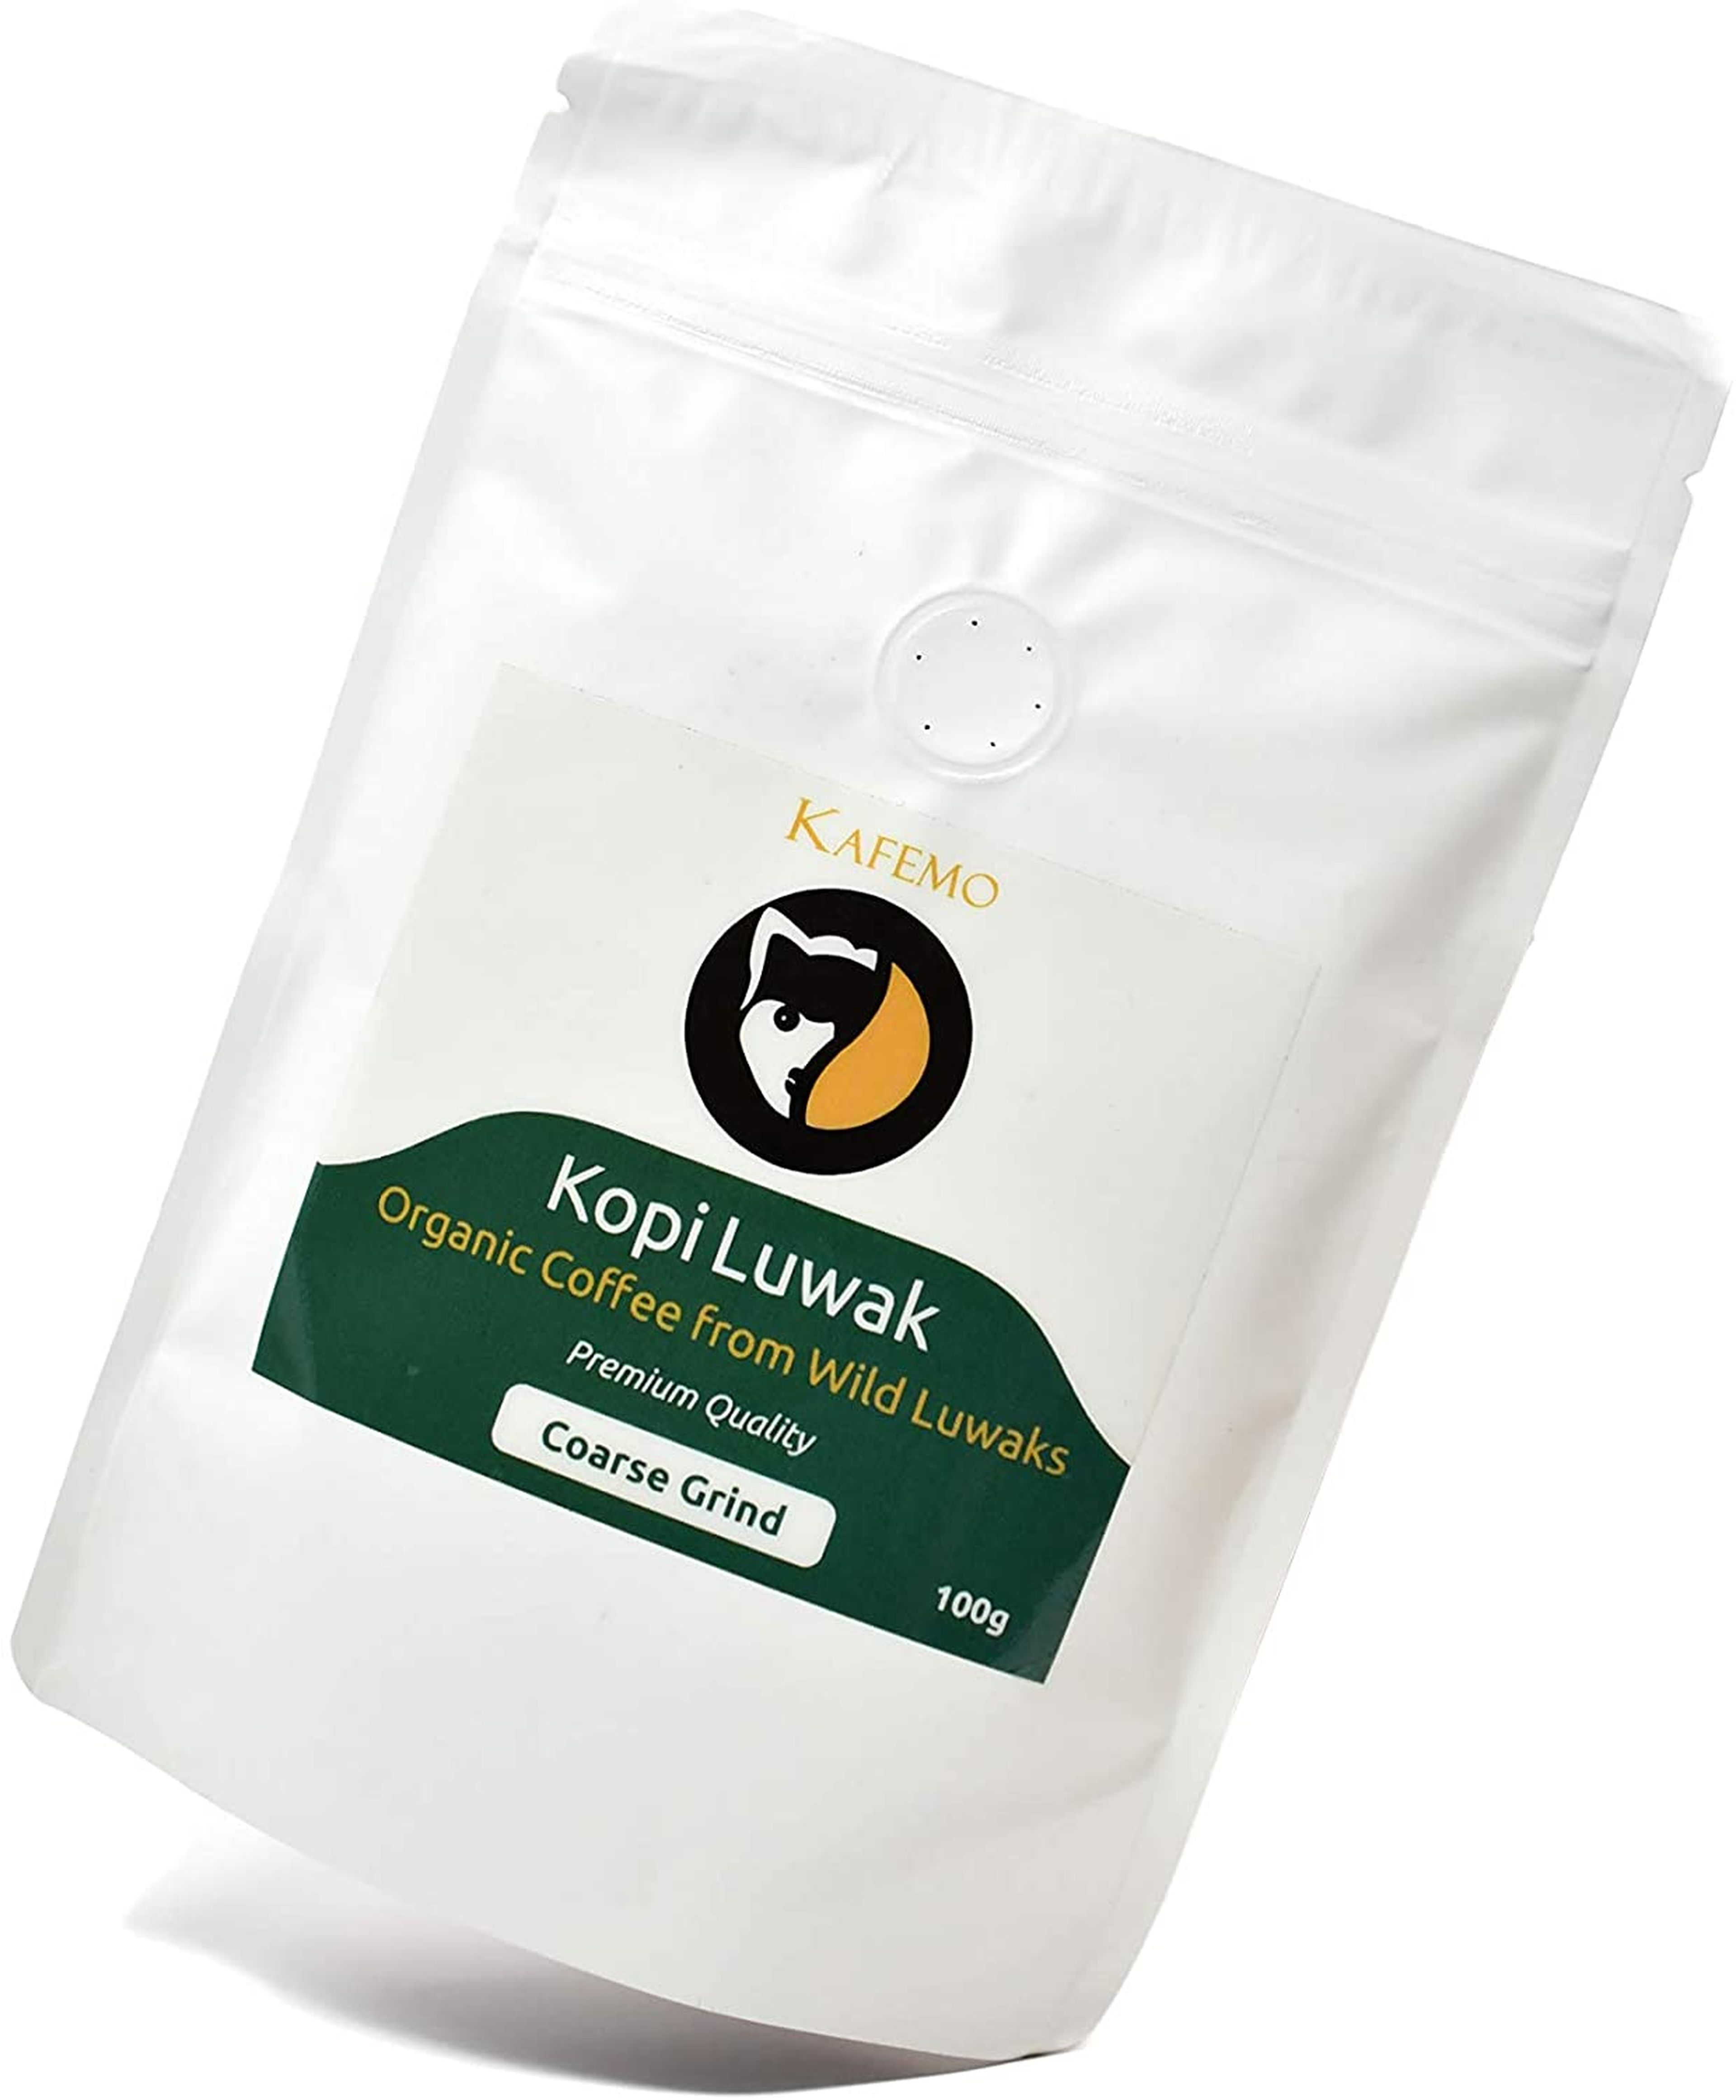 Café Kopi Luwak Premium